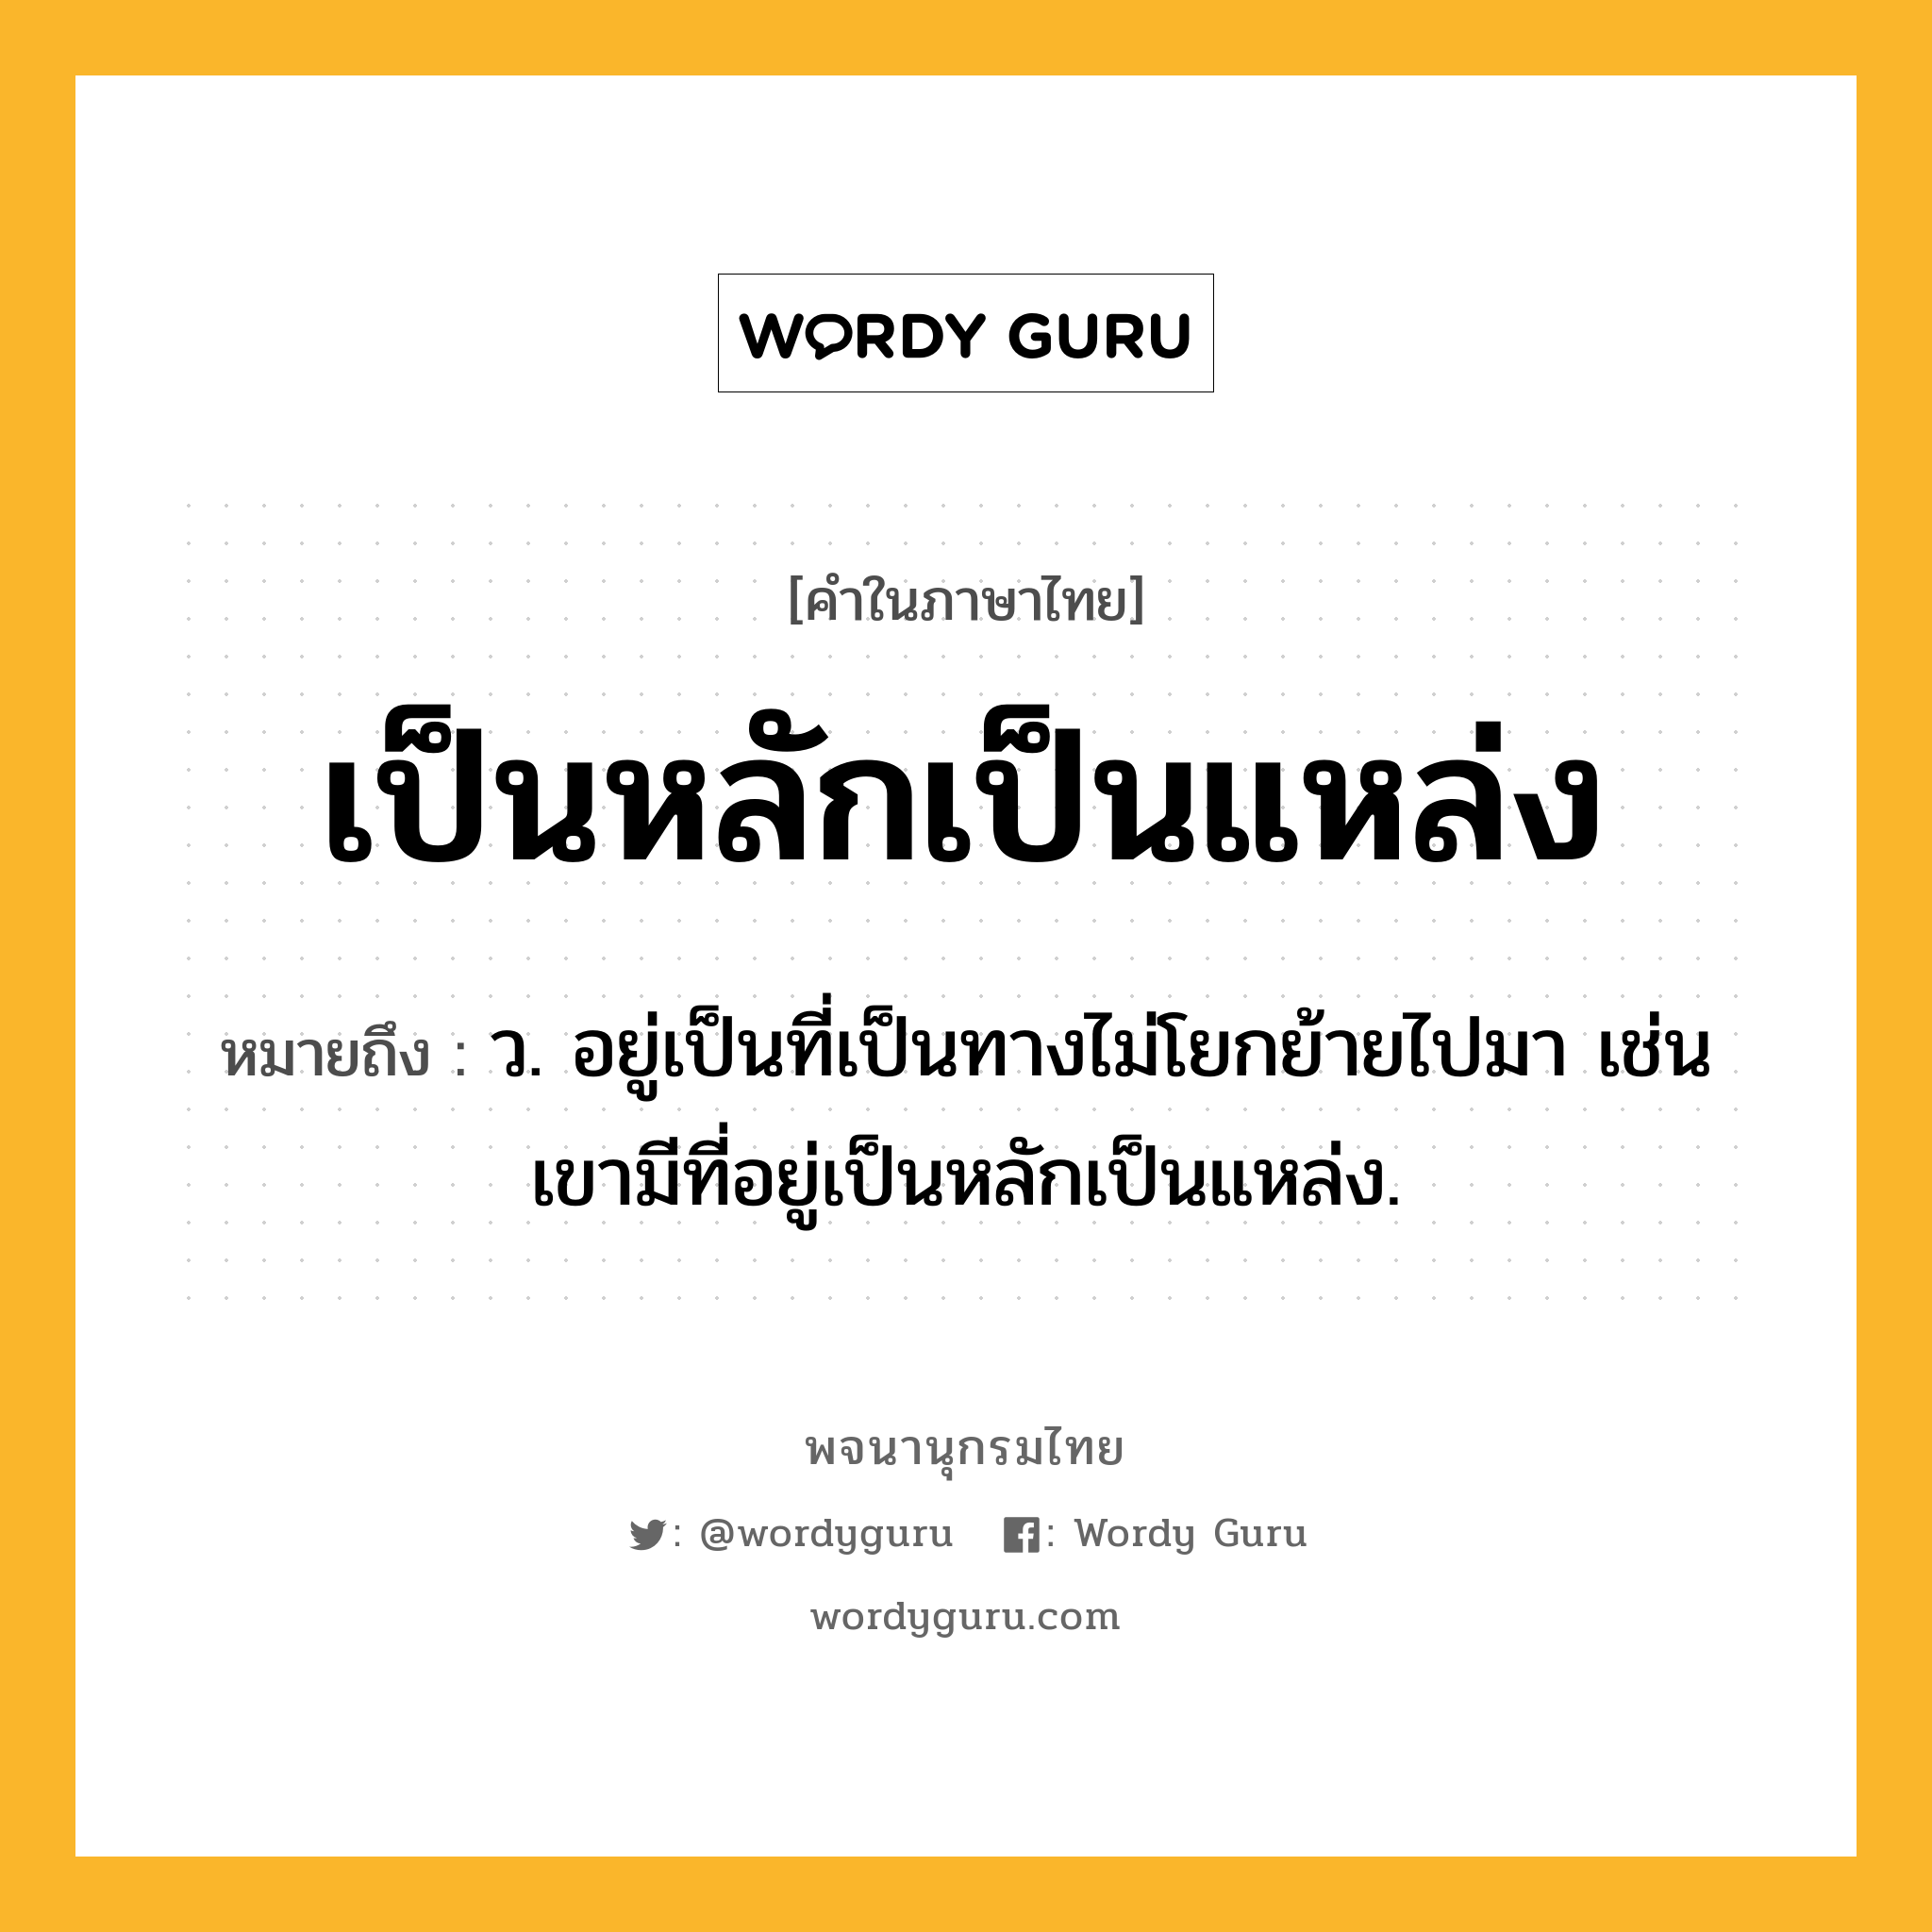 เป็นหลักเป็นแหล่ง ความหมาย หมายถึงอะไร?, คำในภาษาไทย เป็นหลักเป็นแหล่ง หมายถึง ว. อยู่เป็นที่เป็นทางไม่โยกย้ายไปมา เช่น เขามีที่อยู่เป็นหลักเป็นแหล่ง.